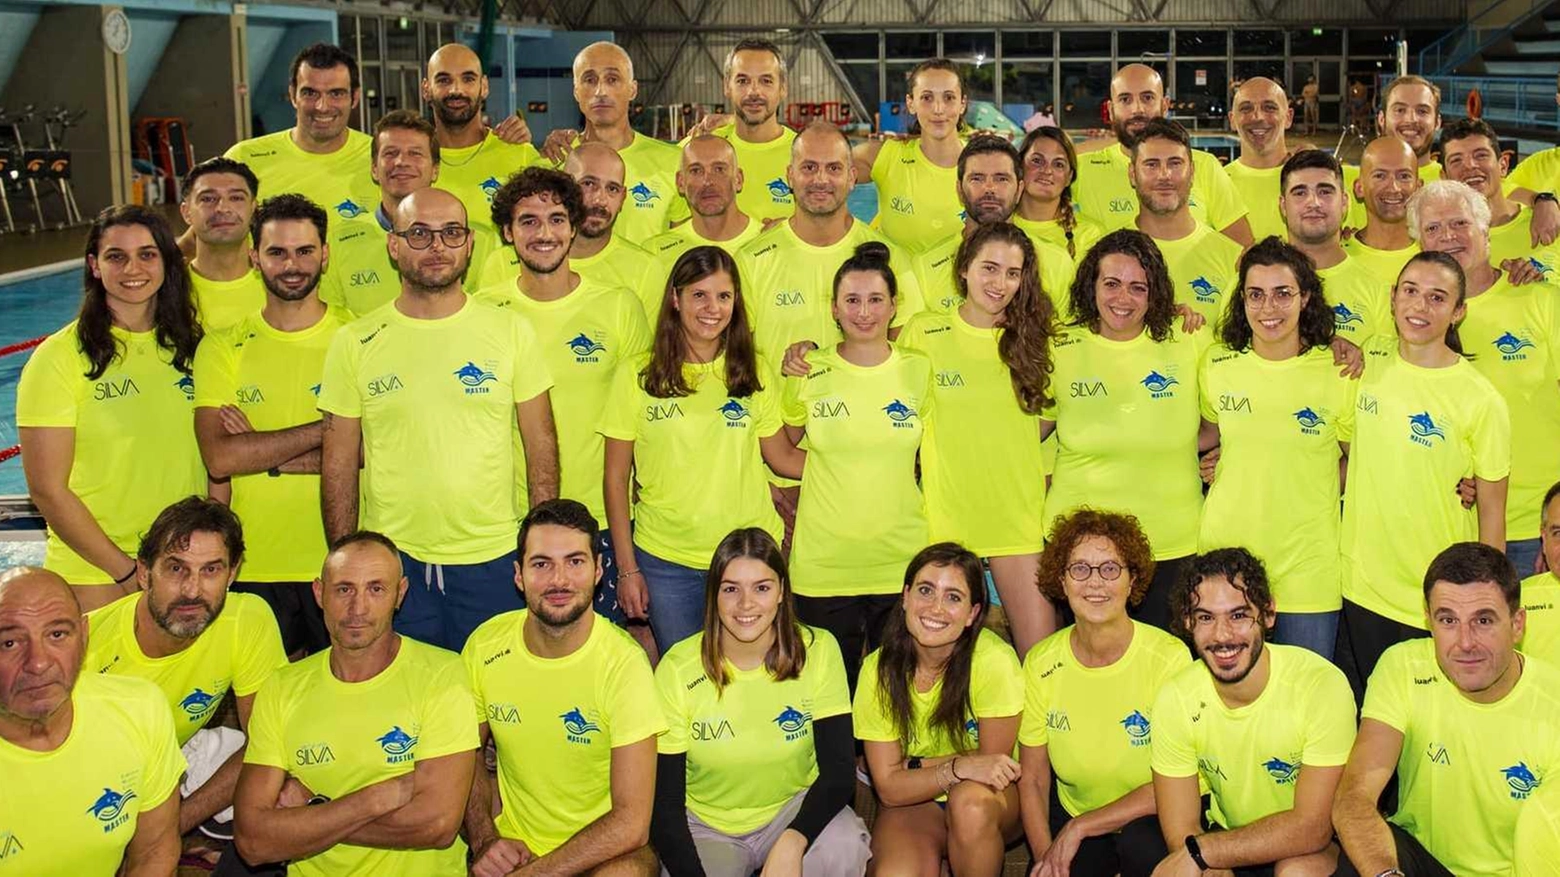 Stagione d’oro per gli ottanta atleti che si allenano nella vasca dell’Iti, ora attesi per la super sfida nelle “acque“ di Livorno